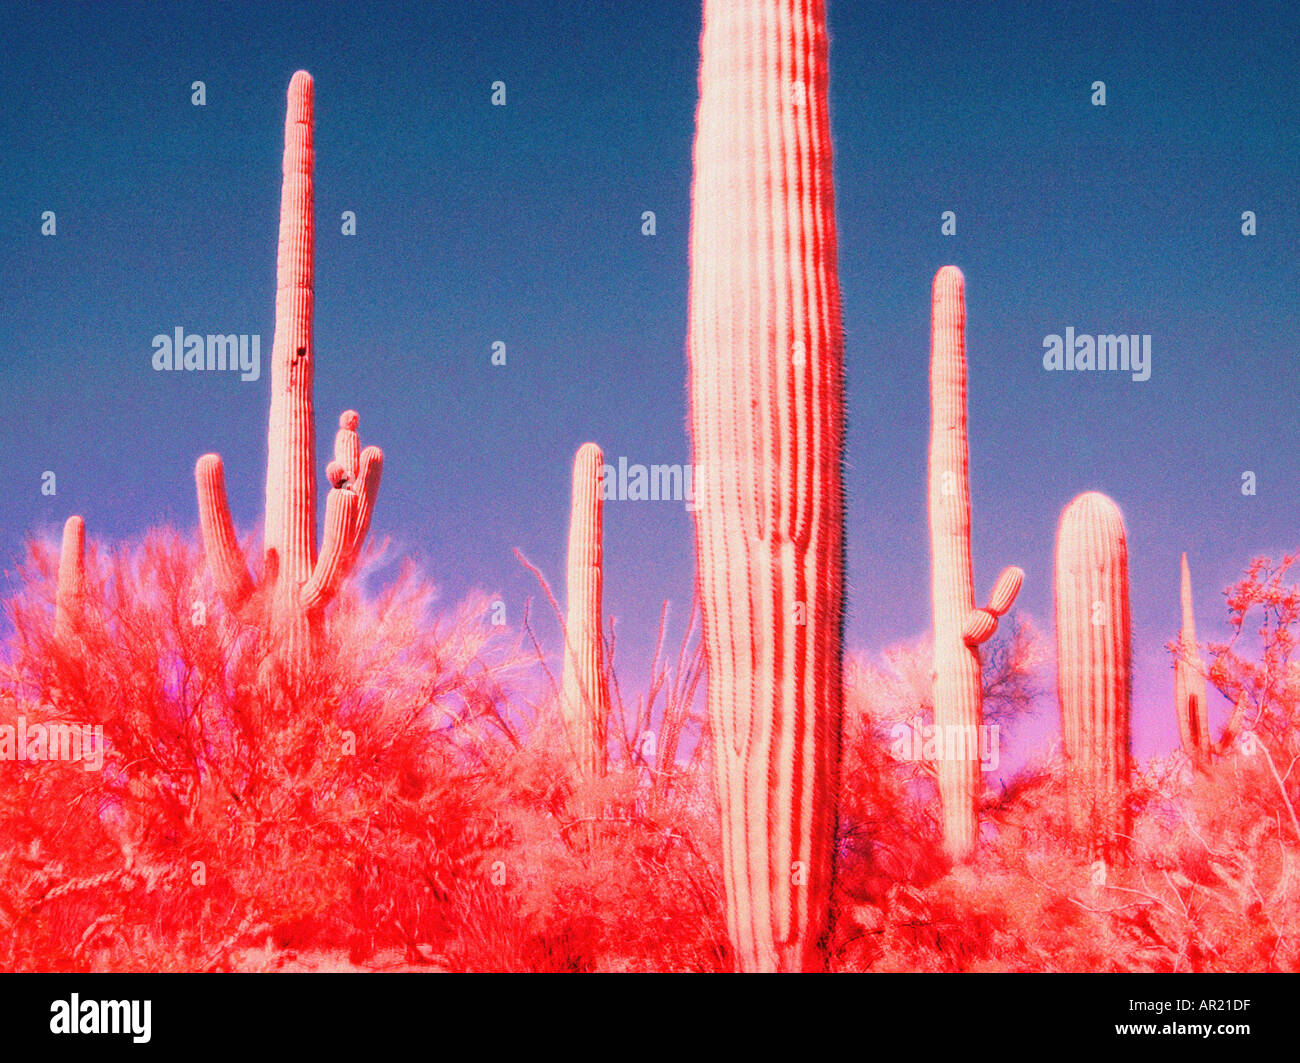 Saguaro Kakteen Infrarot-Bild Stockfoto